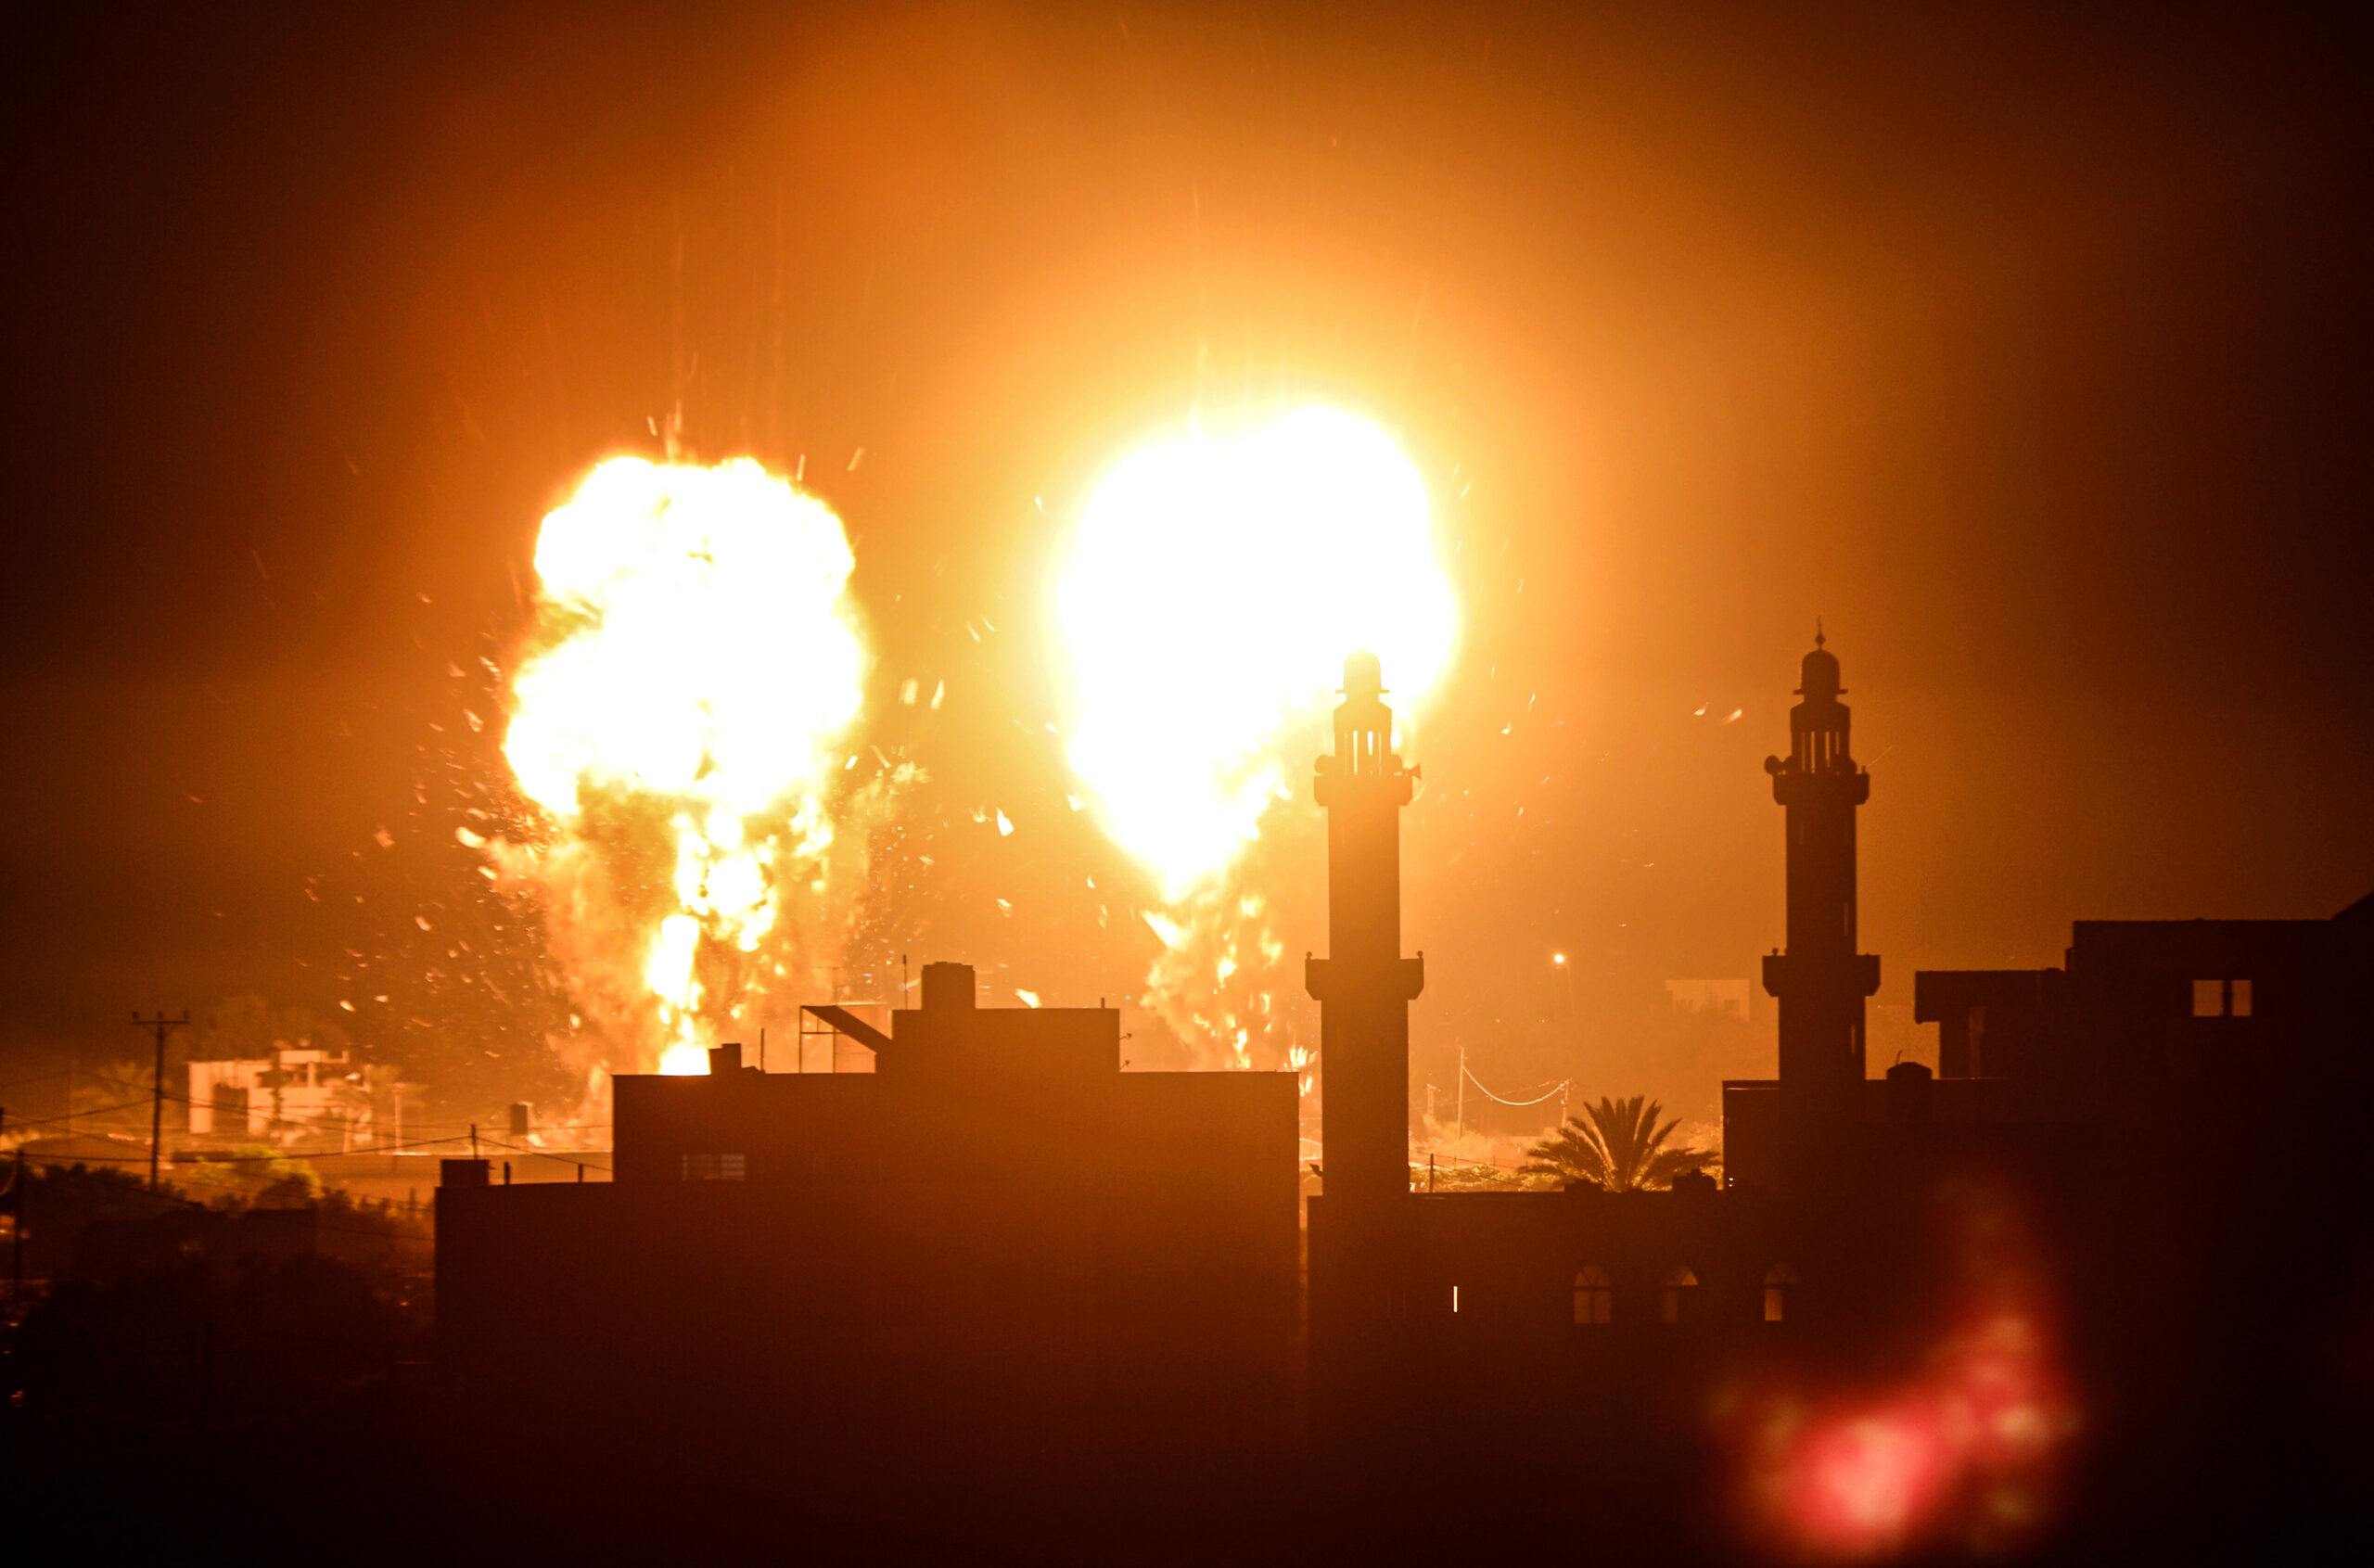 Asap membumbung setelah rudal Israel mencapai sasaran di Gaza